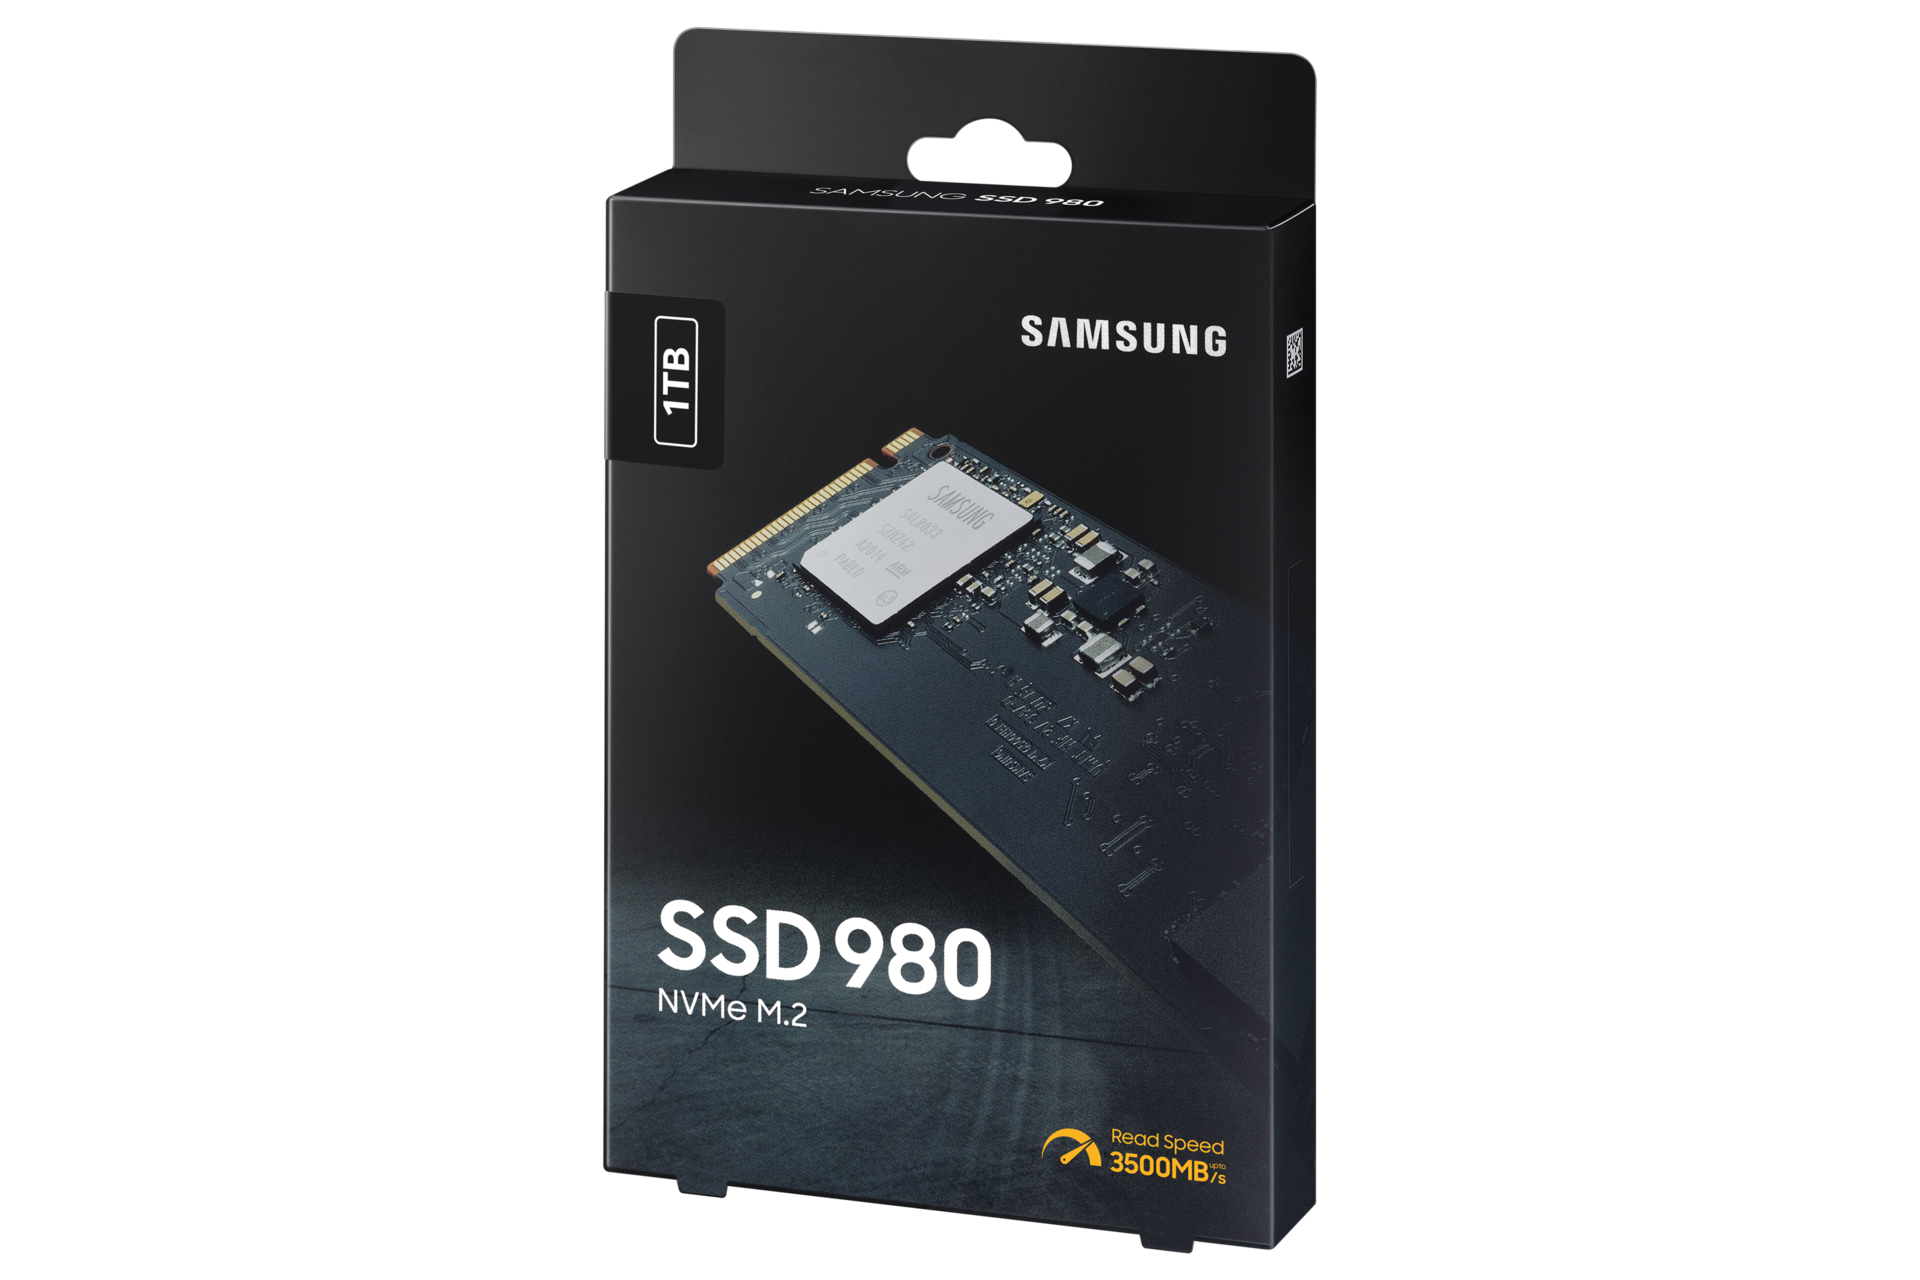 Samsung 980 250gb. SSD Samsung 980 250gb. Samsung 980 500gb MZ-v8v500bw. SSD Samsung 980 NVME M.2. SSD Samsung 980 250gb MZ-v8v250bw.